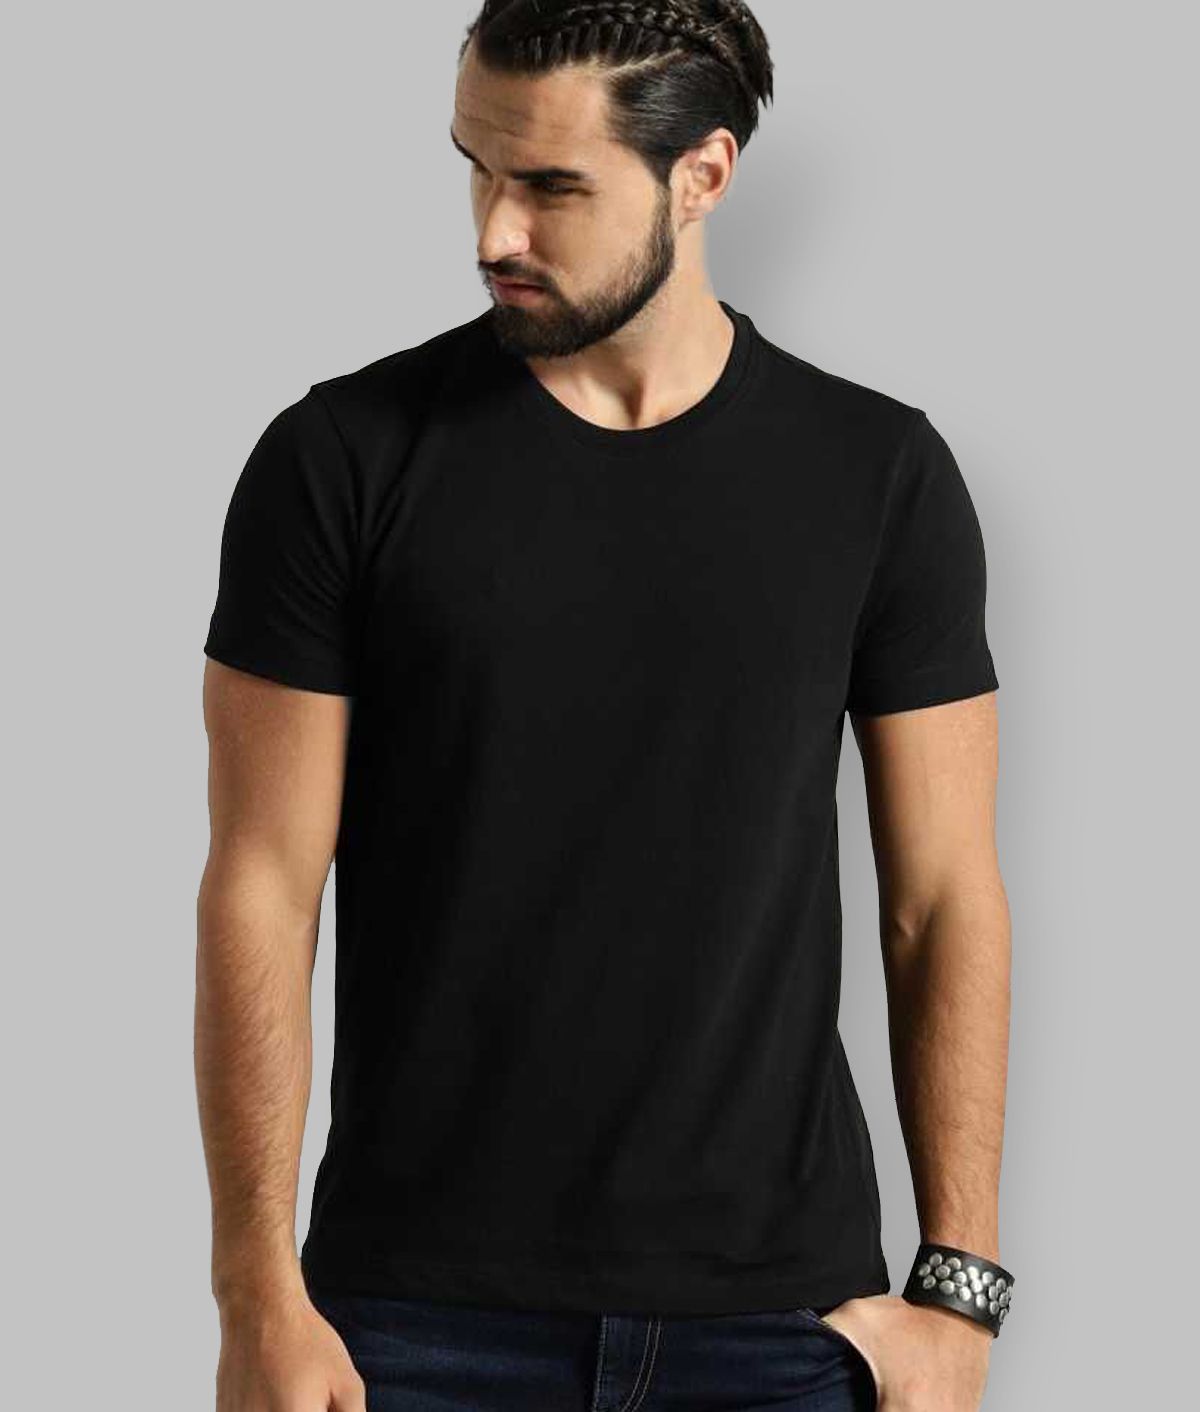 Masha Cotton Blend Regular Fit Half Sleeves Round Neck Black Solids T-Shirt for Men